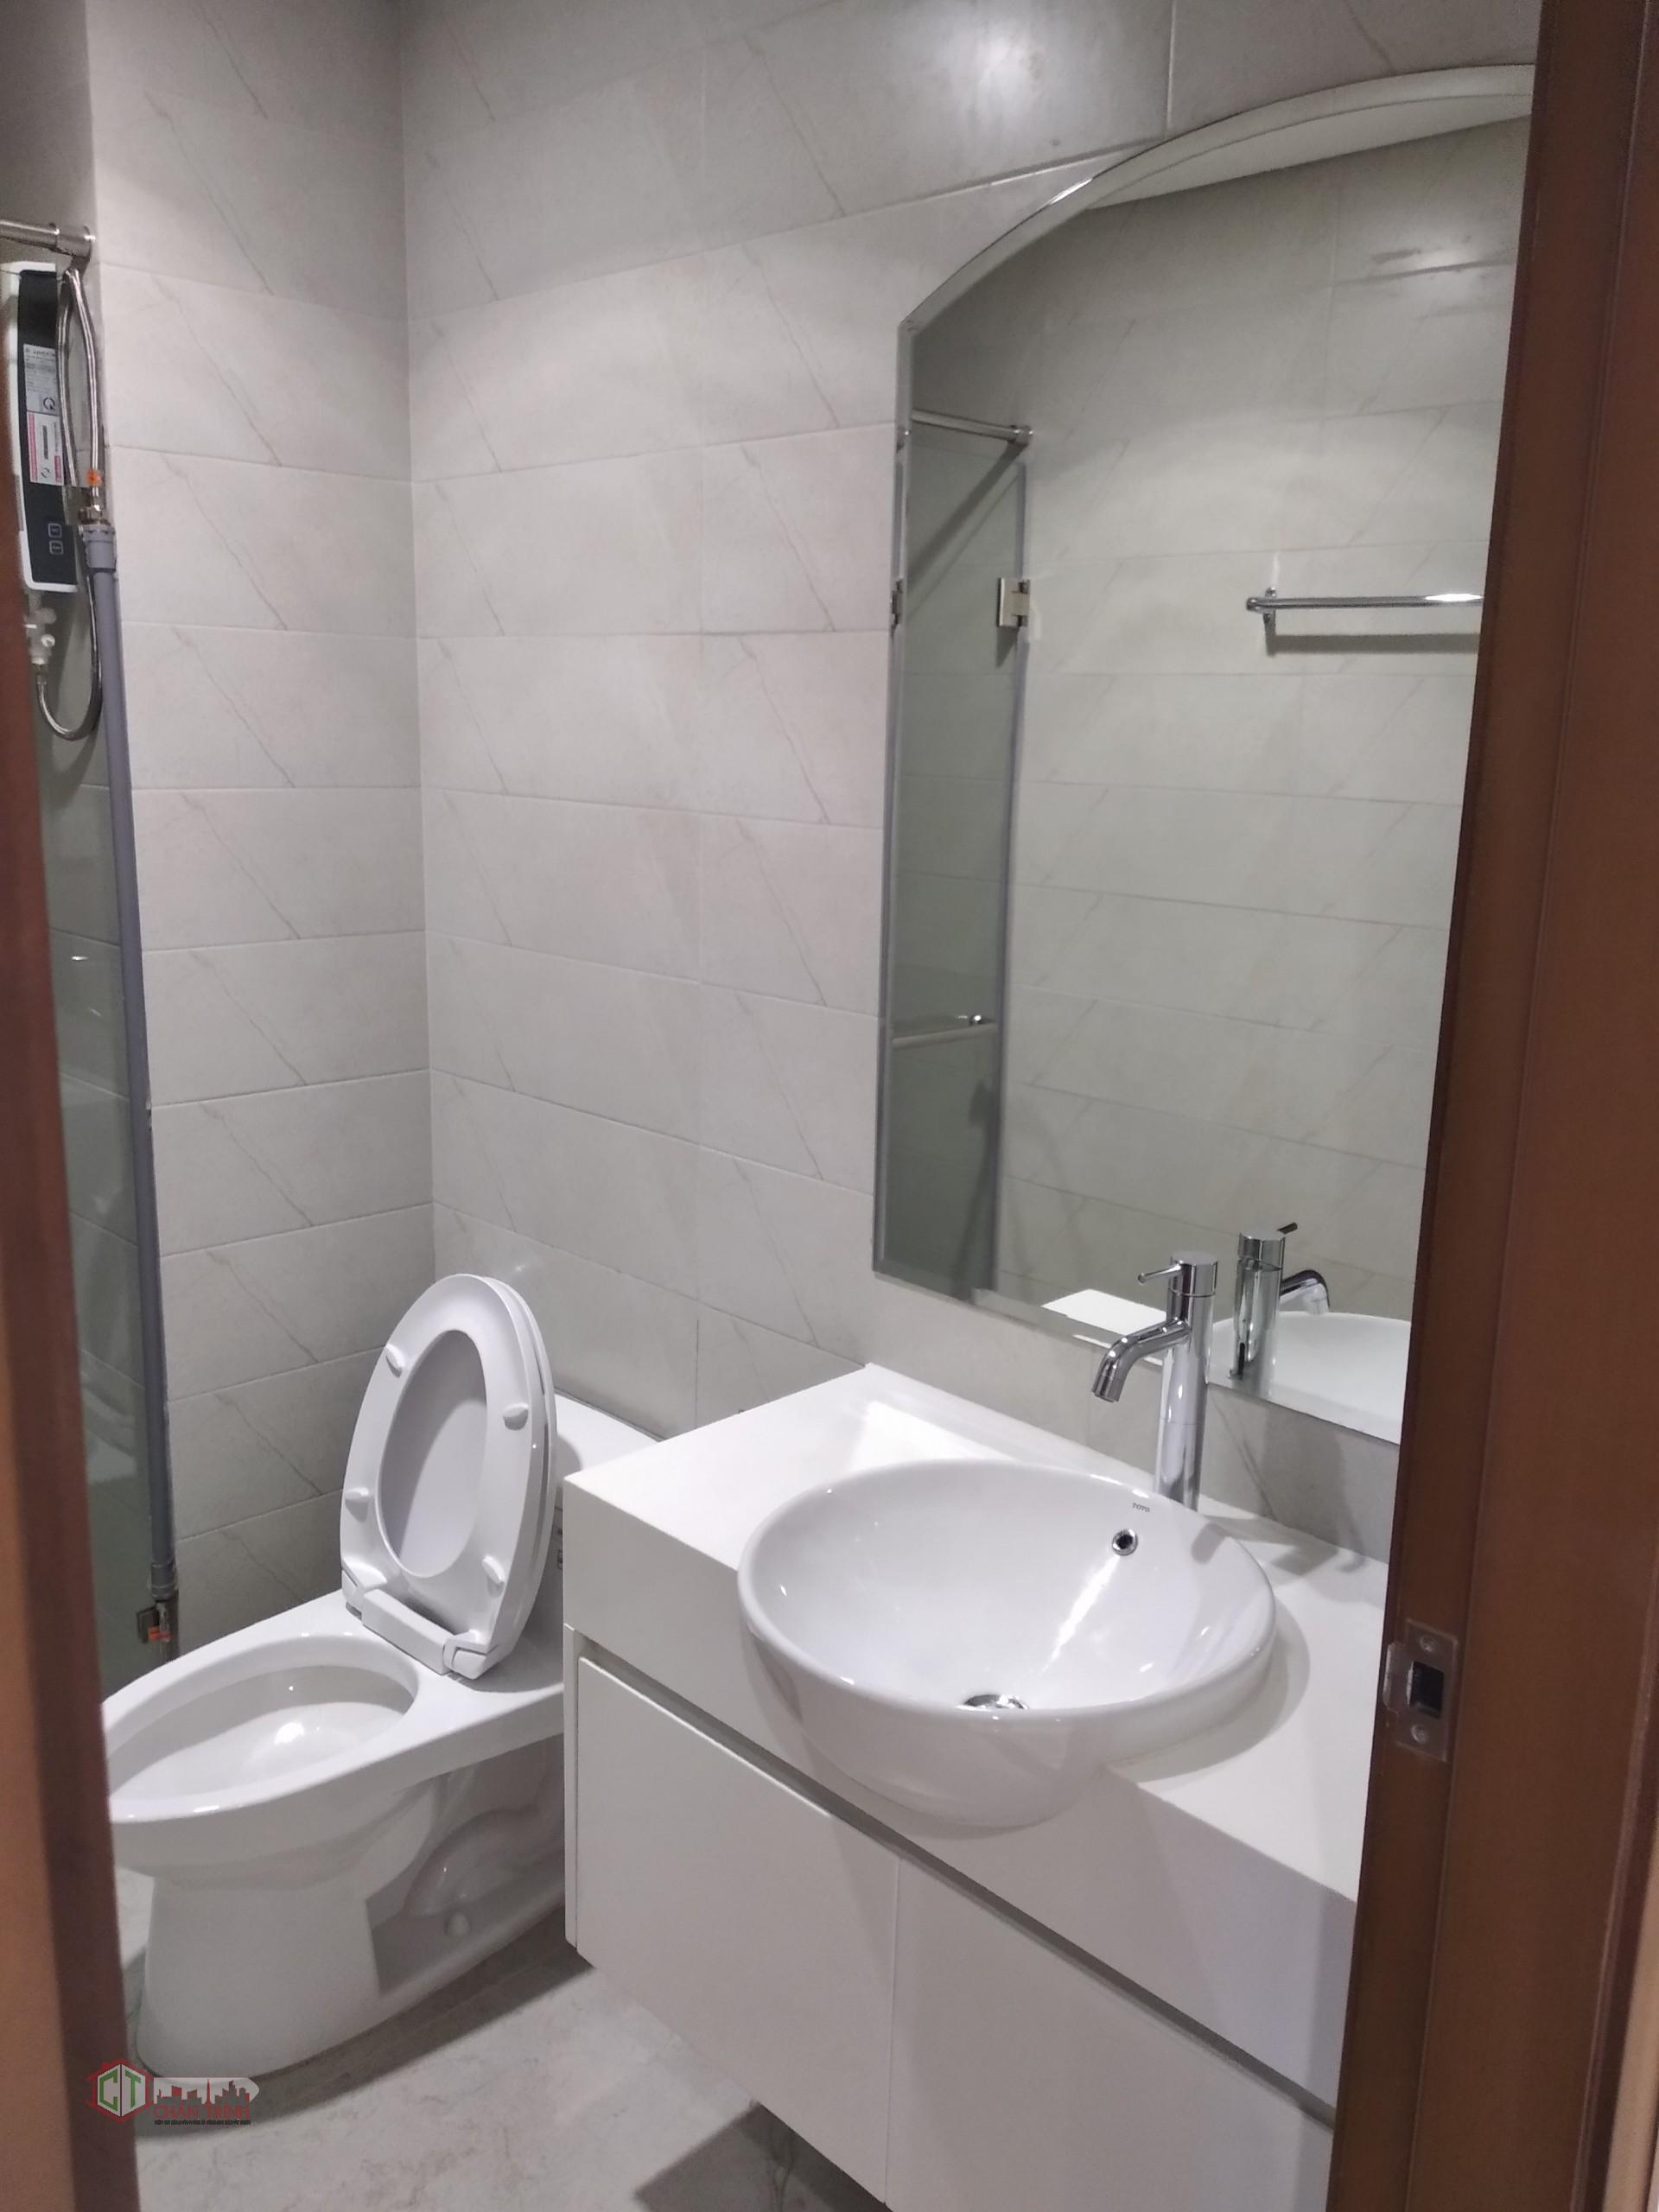 Nhà vệ sinh - Căn hộ 1 phòng ngủ L3-10.12 cho thuê Vinhomes Central Park